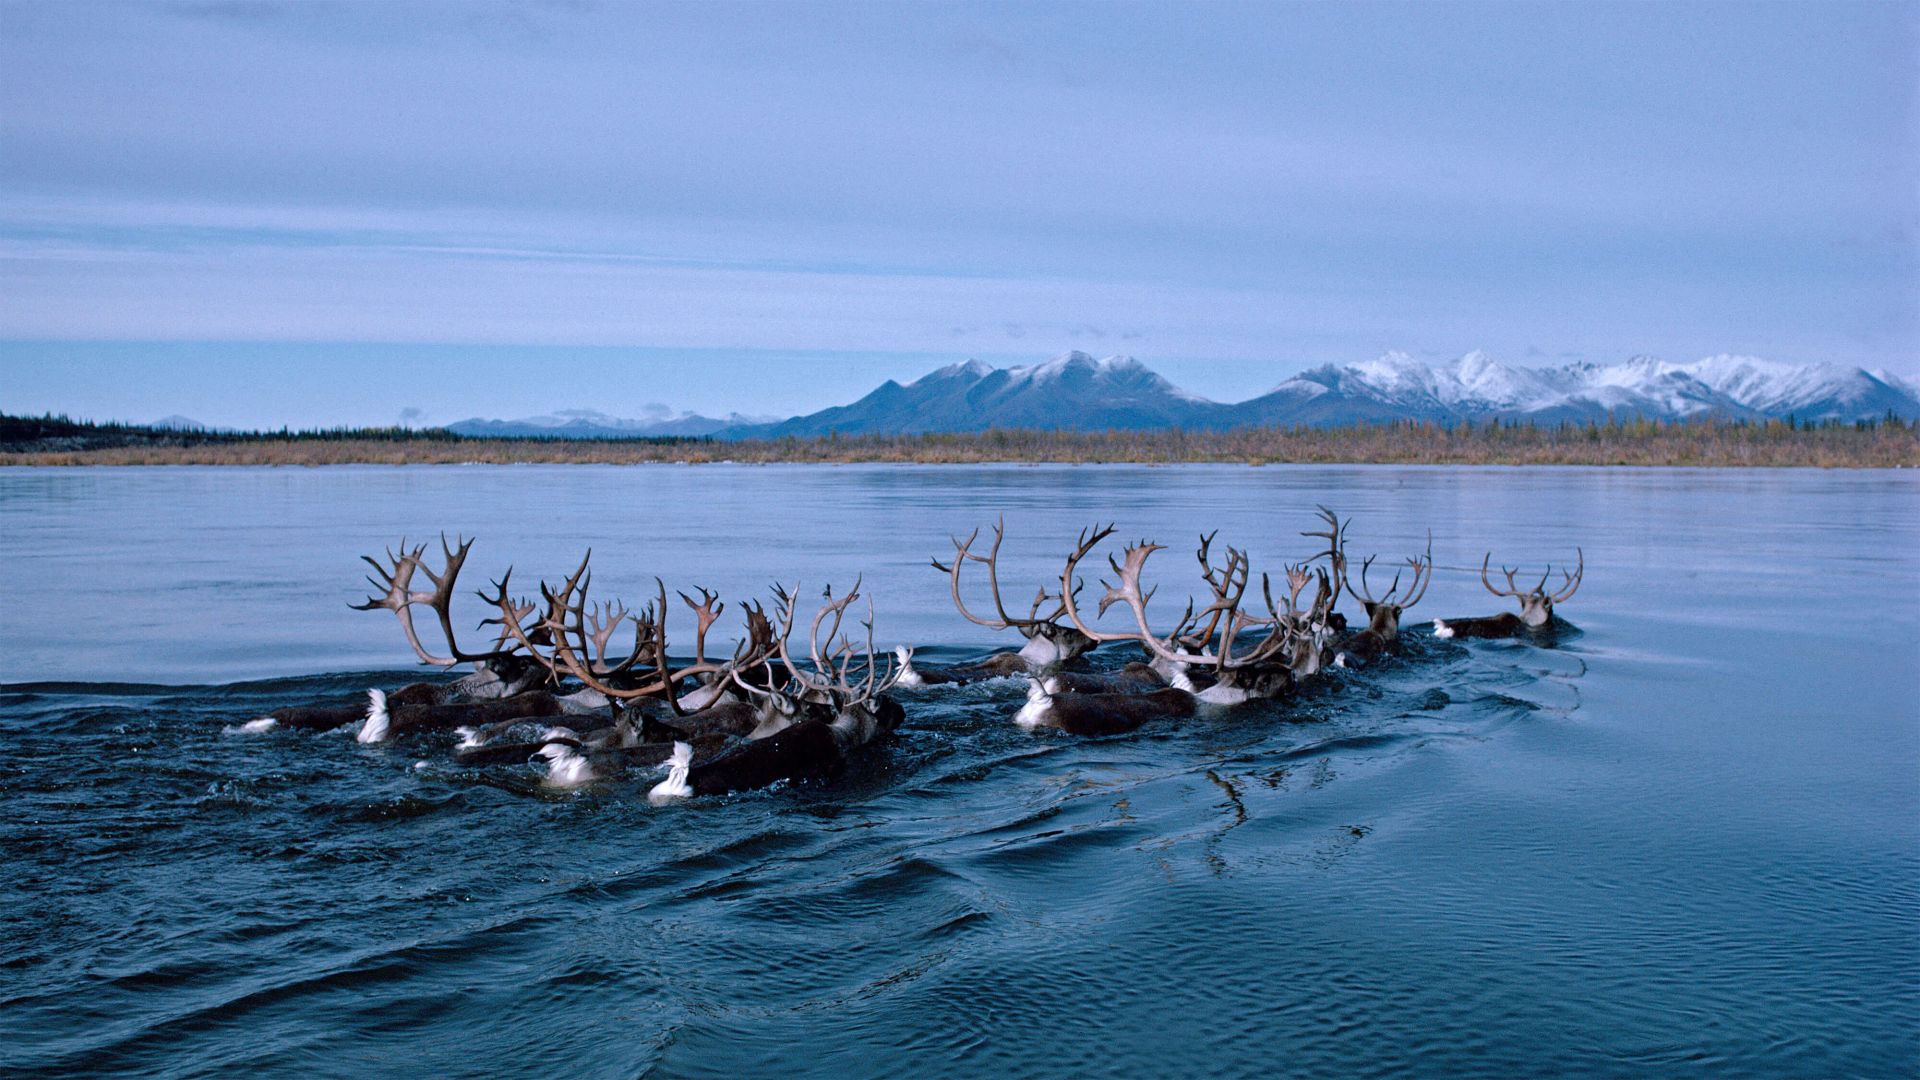 deer, Alaska, Kobuk River, Bing, Microsoft, 4K (horizontal)